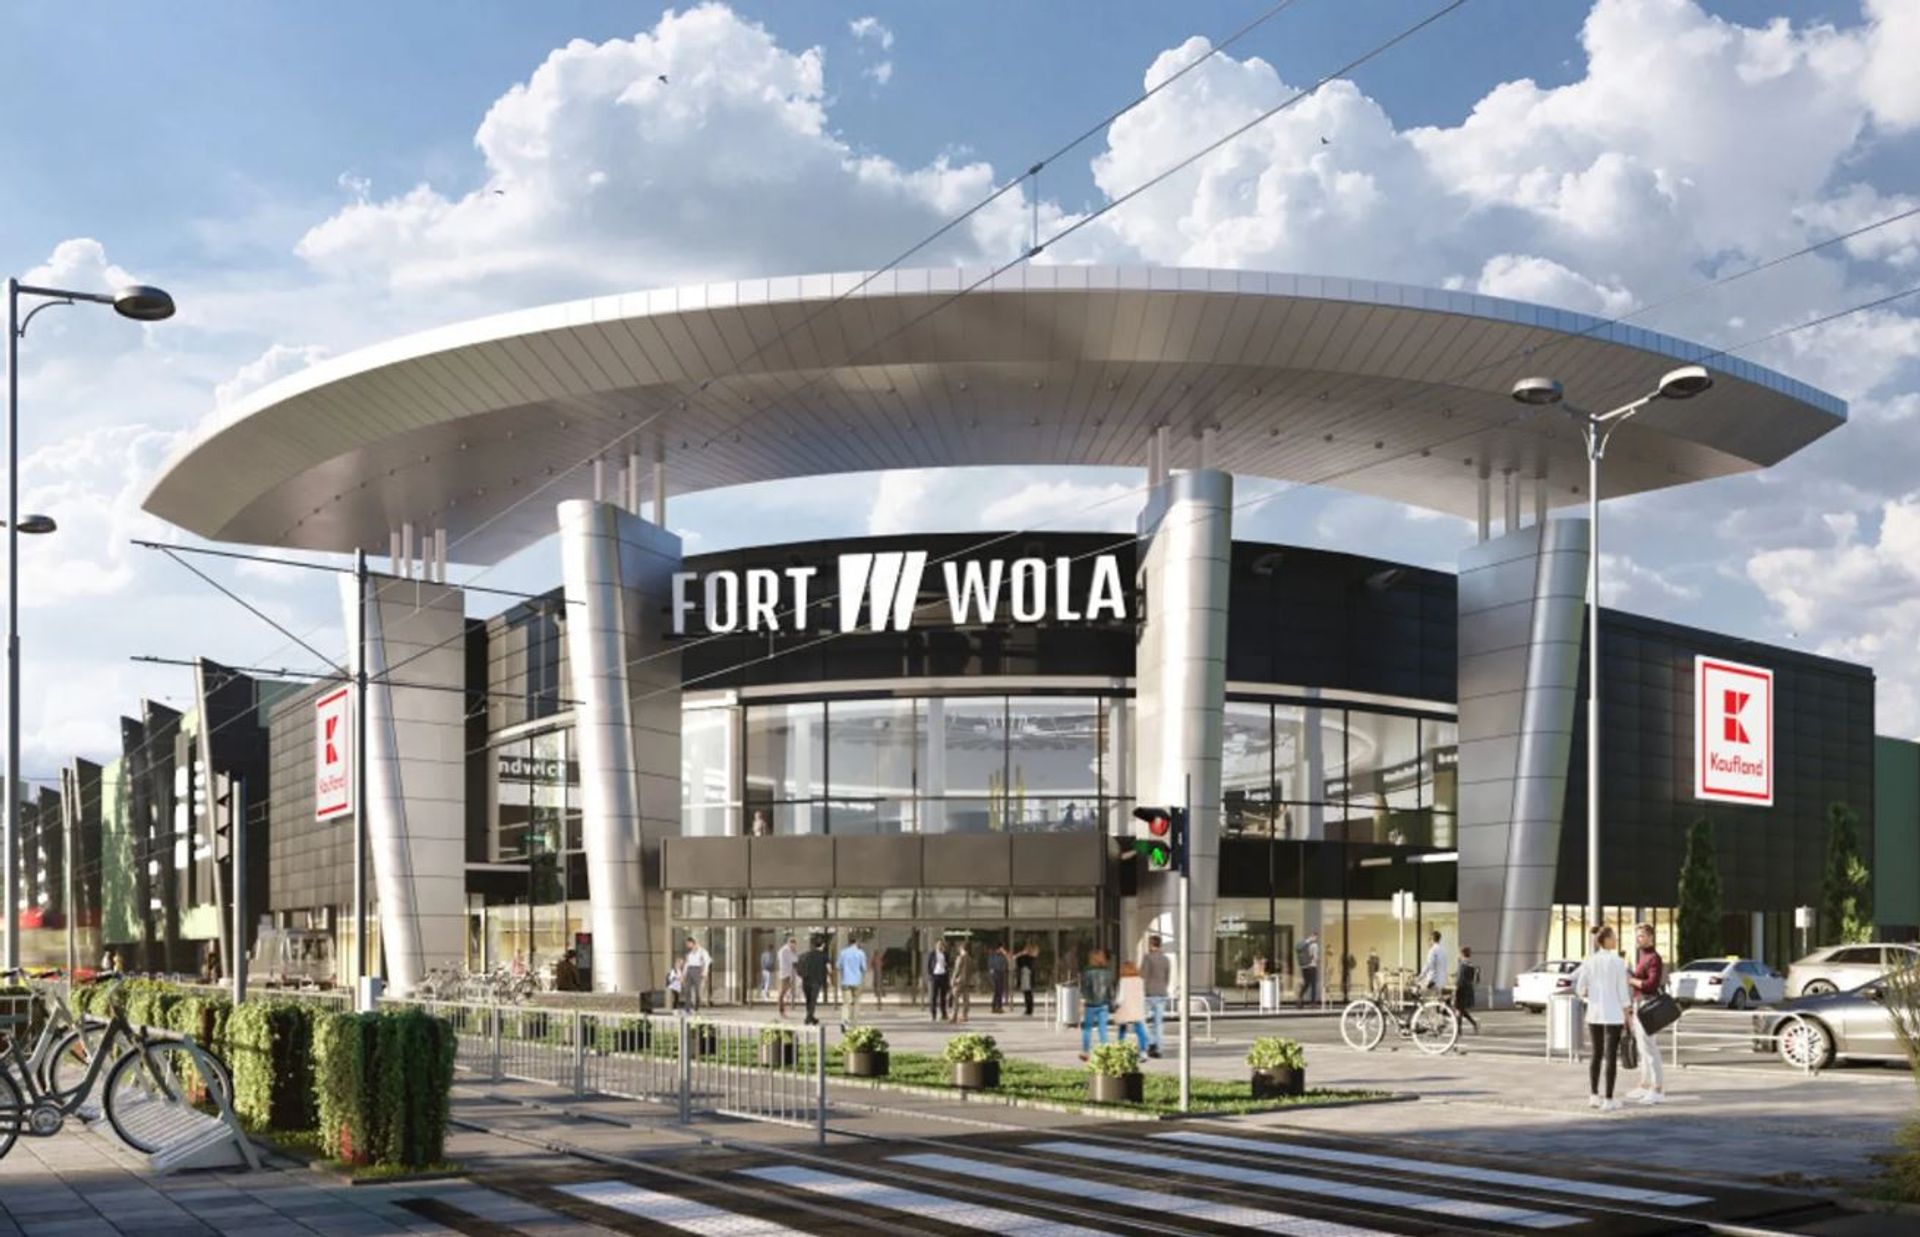 Zmodernizowane centrum handlowe Fort Wola w Warszawie zostanie otwarte w lutym 2023 roku